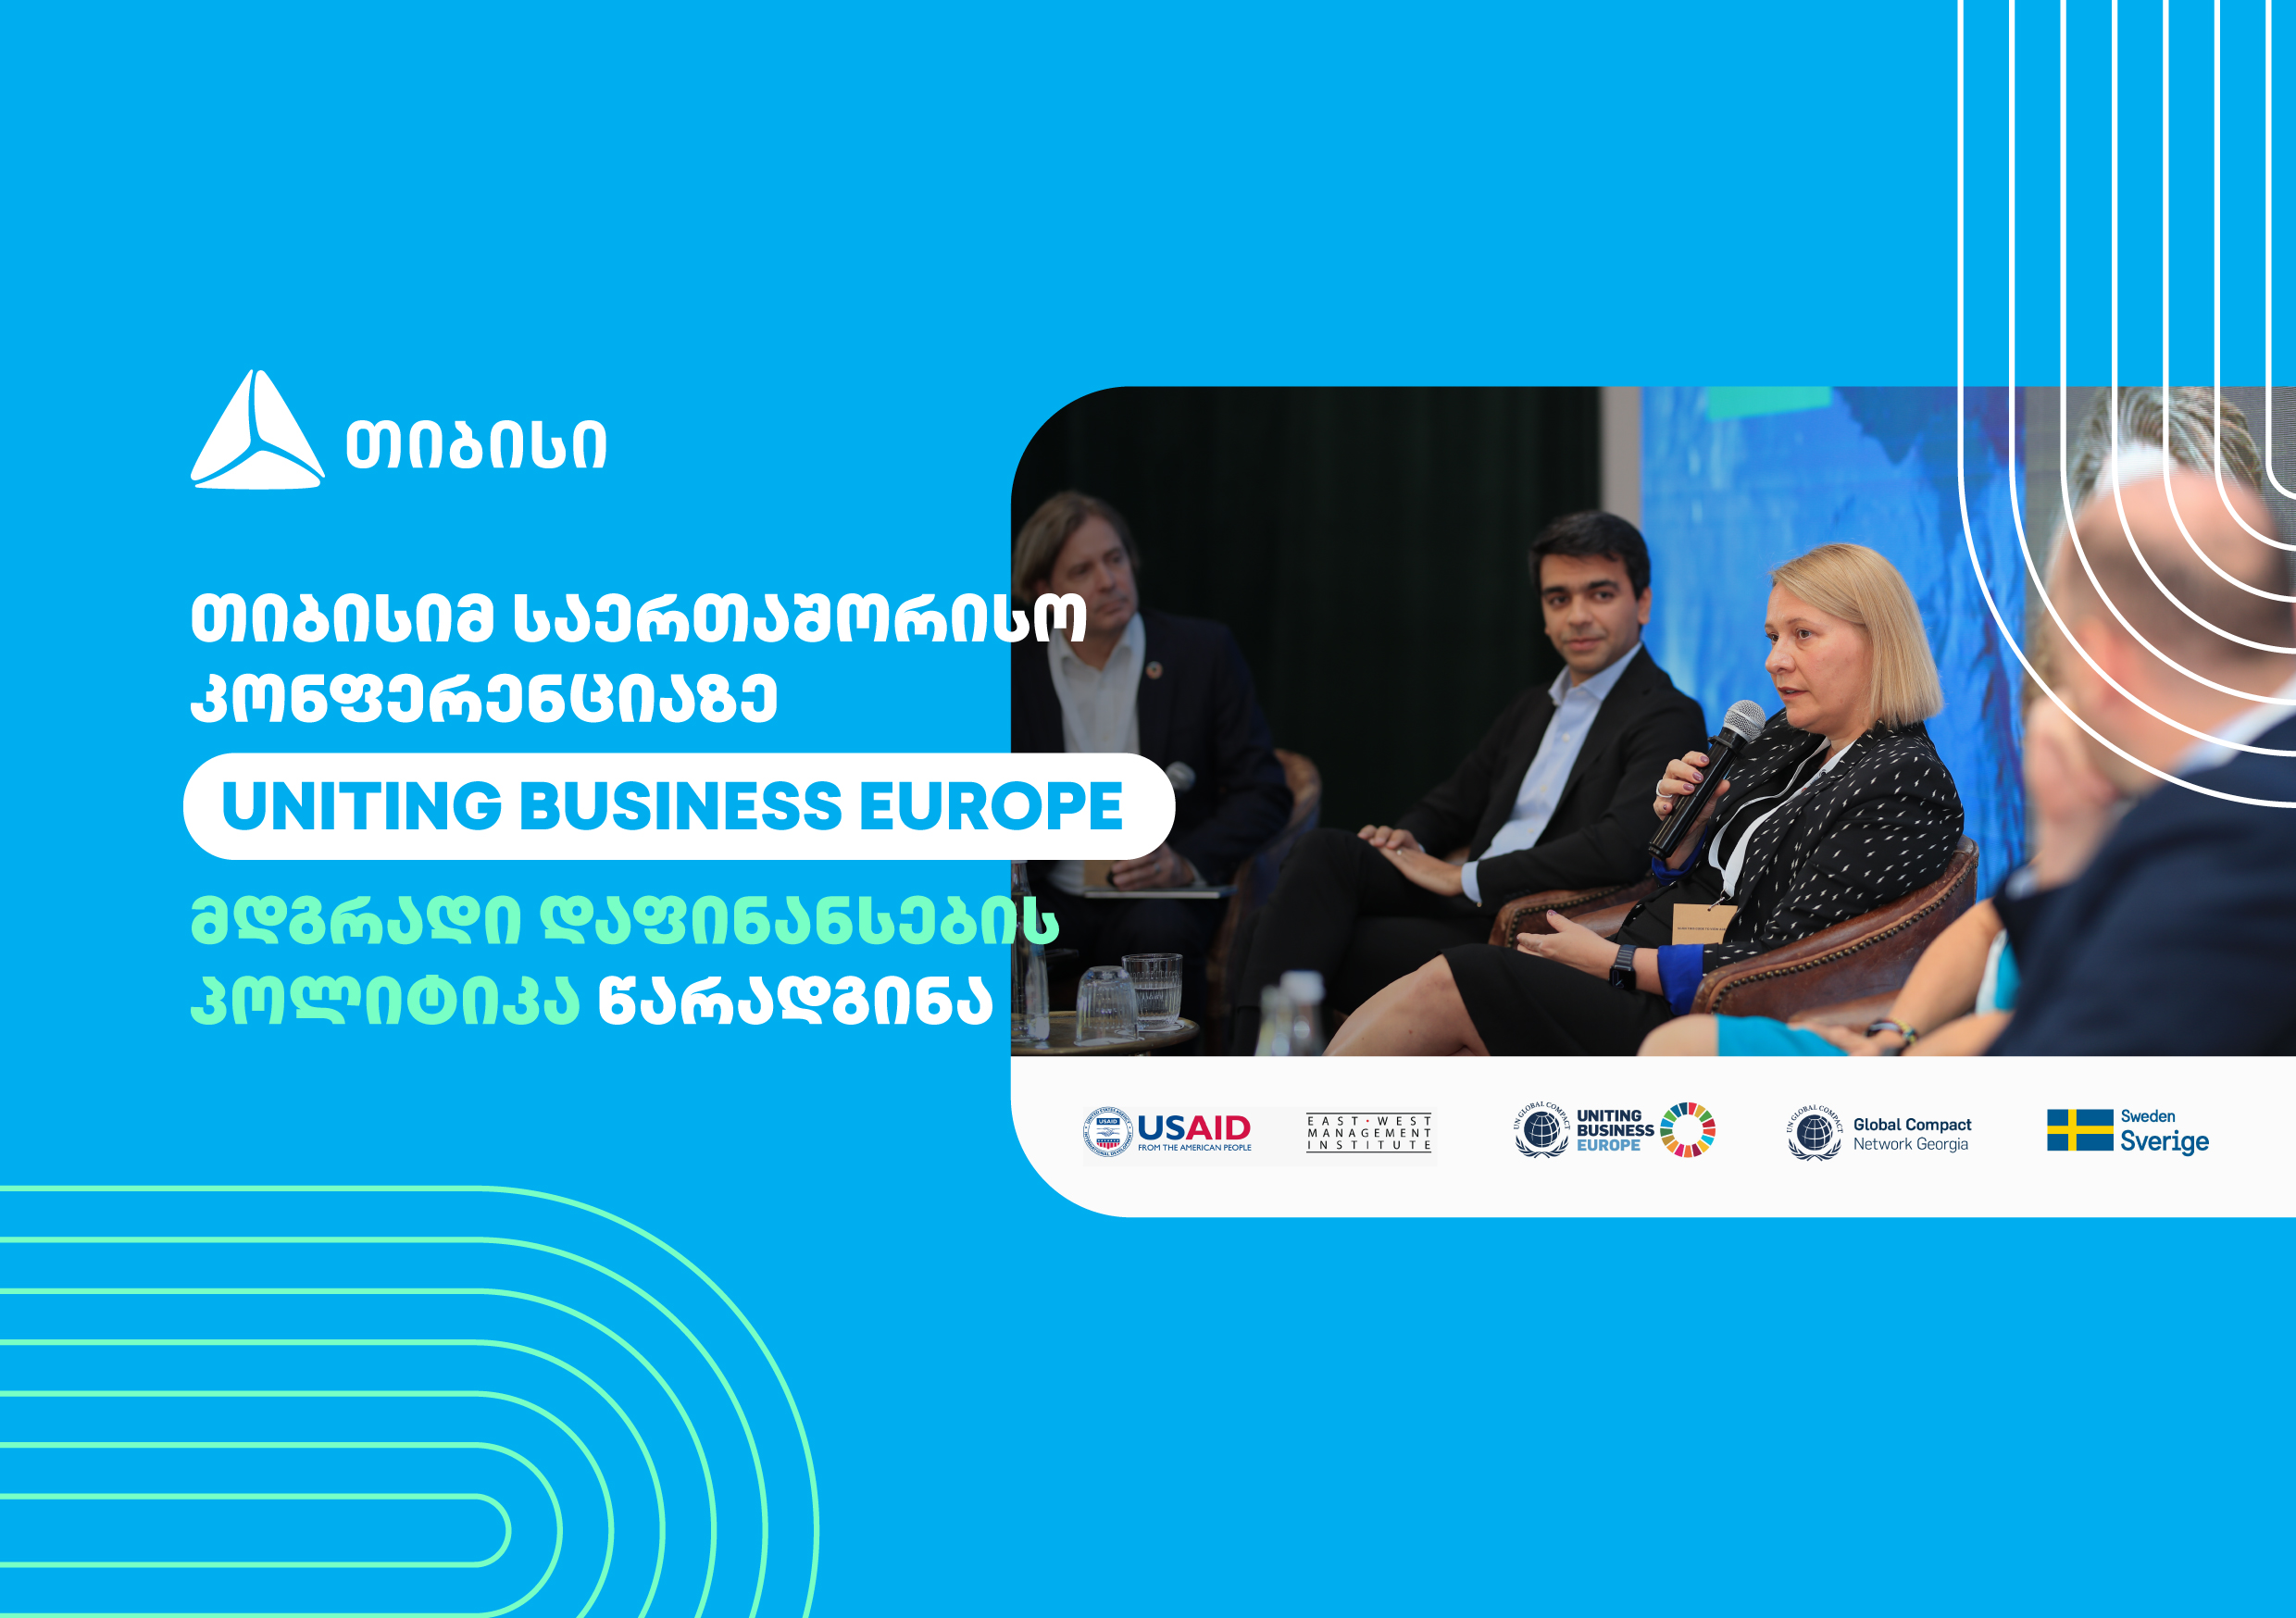 თიბისიმ საერთაშორისო კონფერენციაზე „UNITING BUSINESS EUROPE” მდგრადი დაფინანსების პოლიტიკა წარადგინა